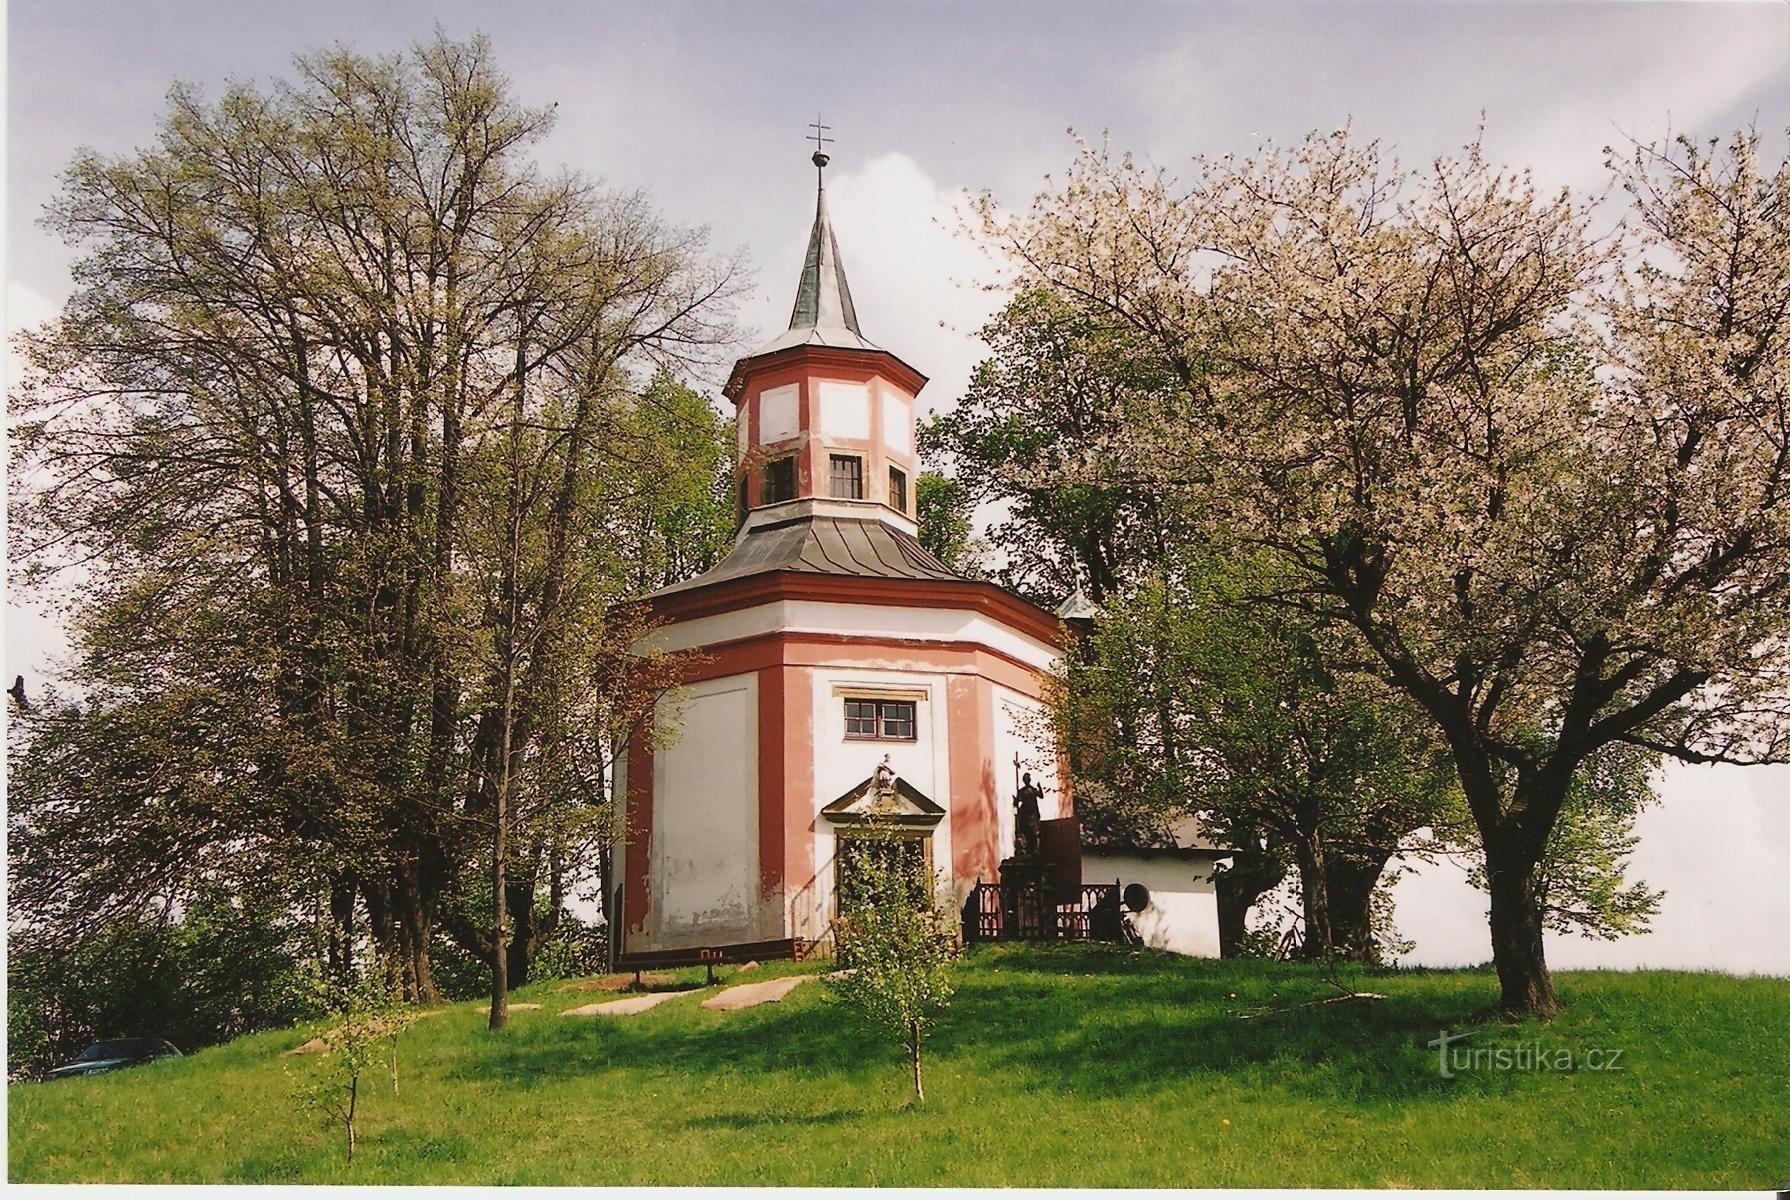 Hartmanice - Pyhän Nikolauksen kappeli Jan Nepomucký